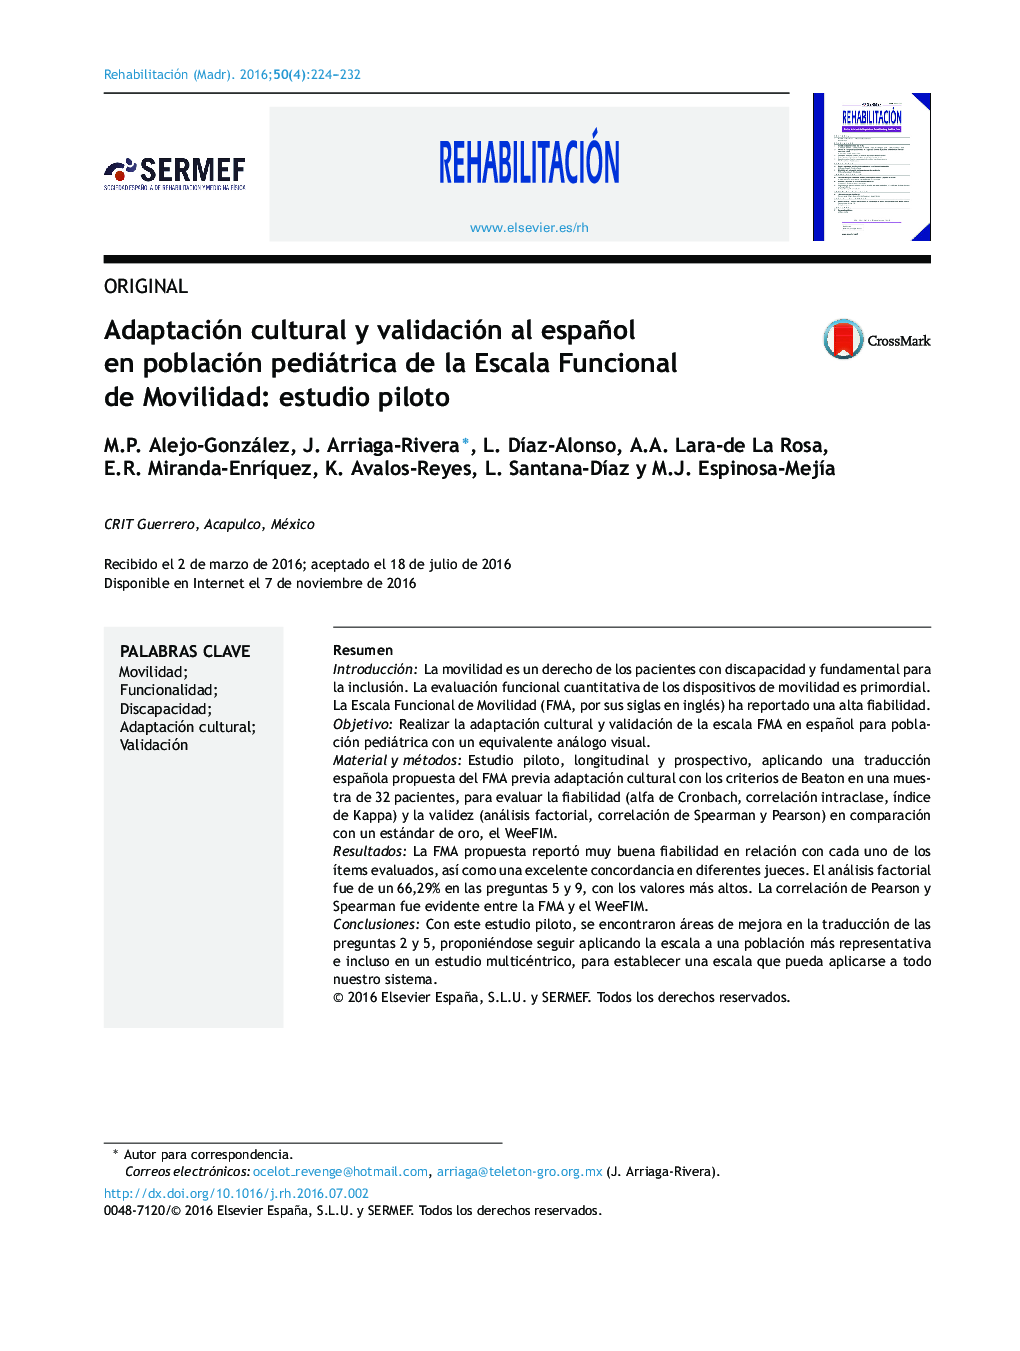 Adaptación cultural y validación al español en población pediátrica de la Escala Funcional de Movilidad: estudio piloto